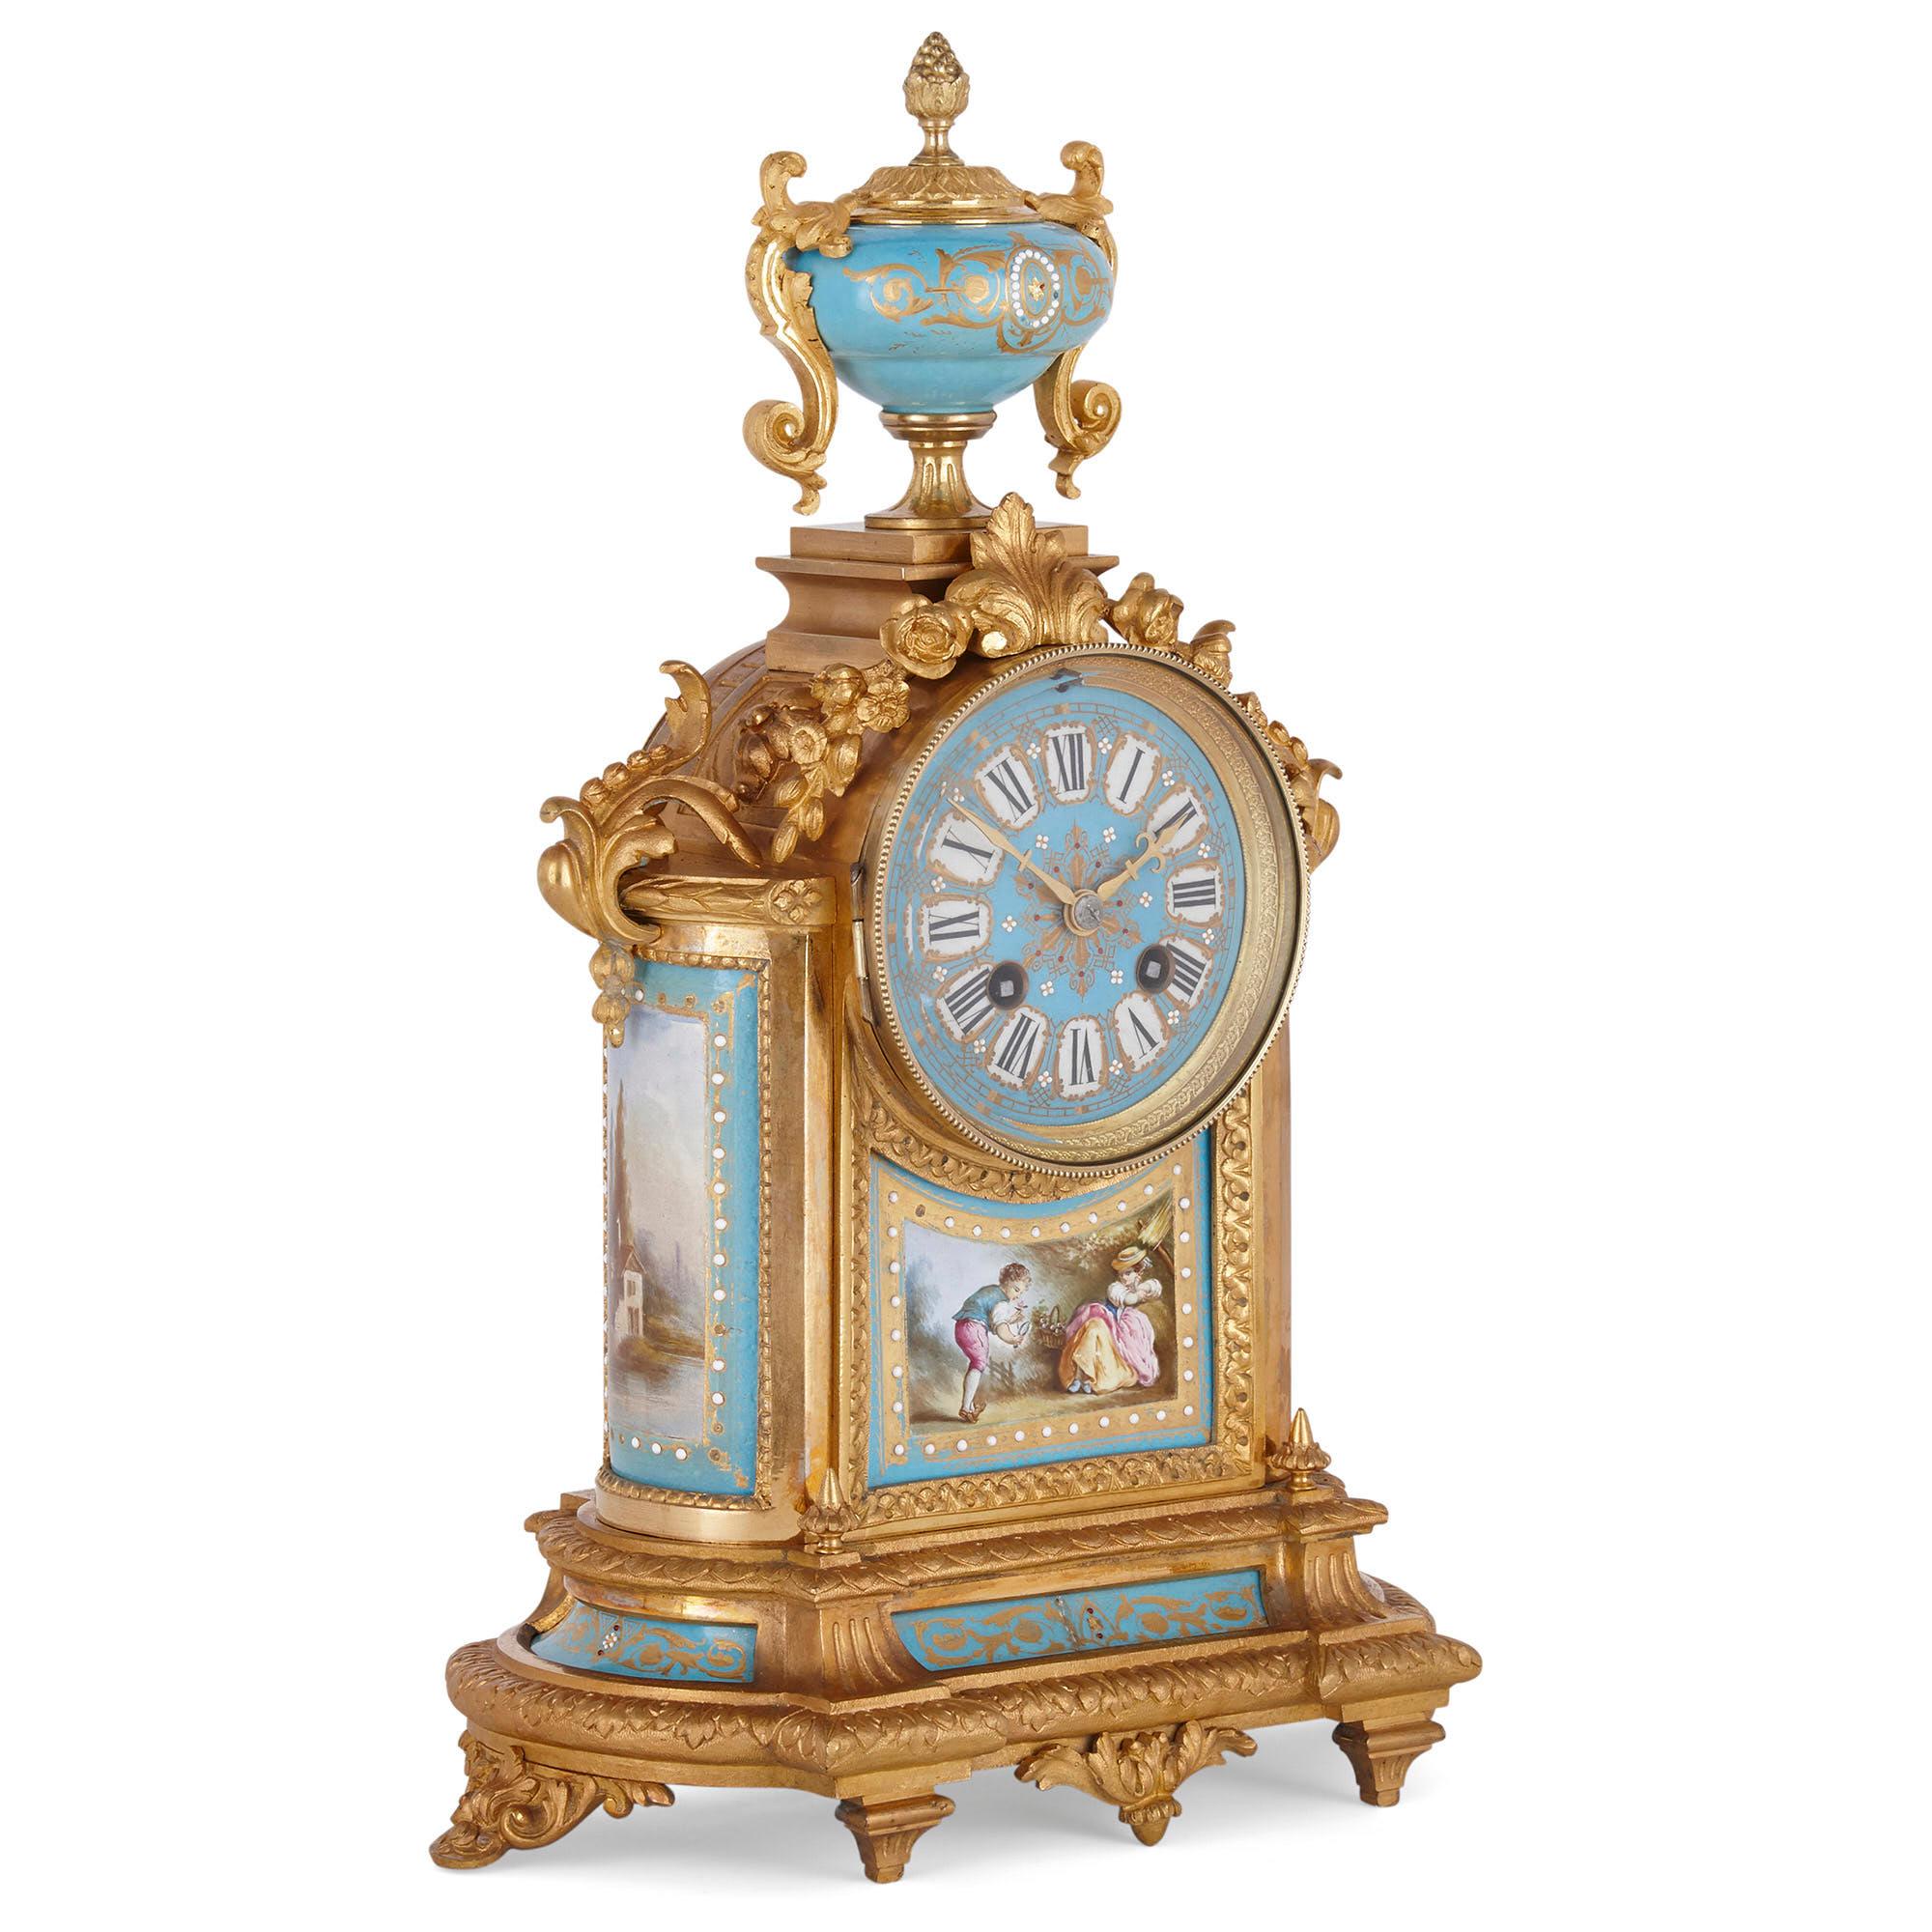 Rokoko Stil vergoldete Bronze montiert Porzellan Uhr Garnitur
Französisch, Ende 19. Jahrhundert
Maße: Uhr: Höhe 38cm, Breite 27cm, Tiefe 13cm
Ewers: Höhe 32cm, Breite 14cm, Tiefe 9cm

Dieses schöne Uhrenset besteht aus einer Kaminsimsuhr und